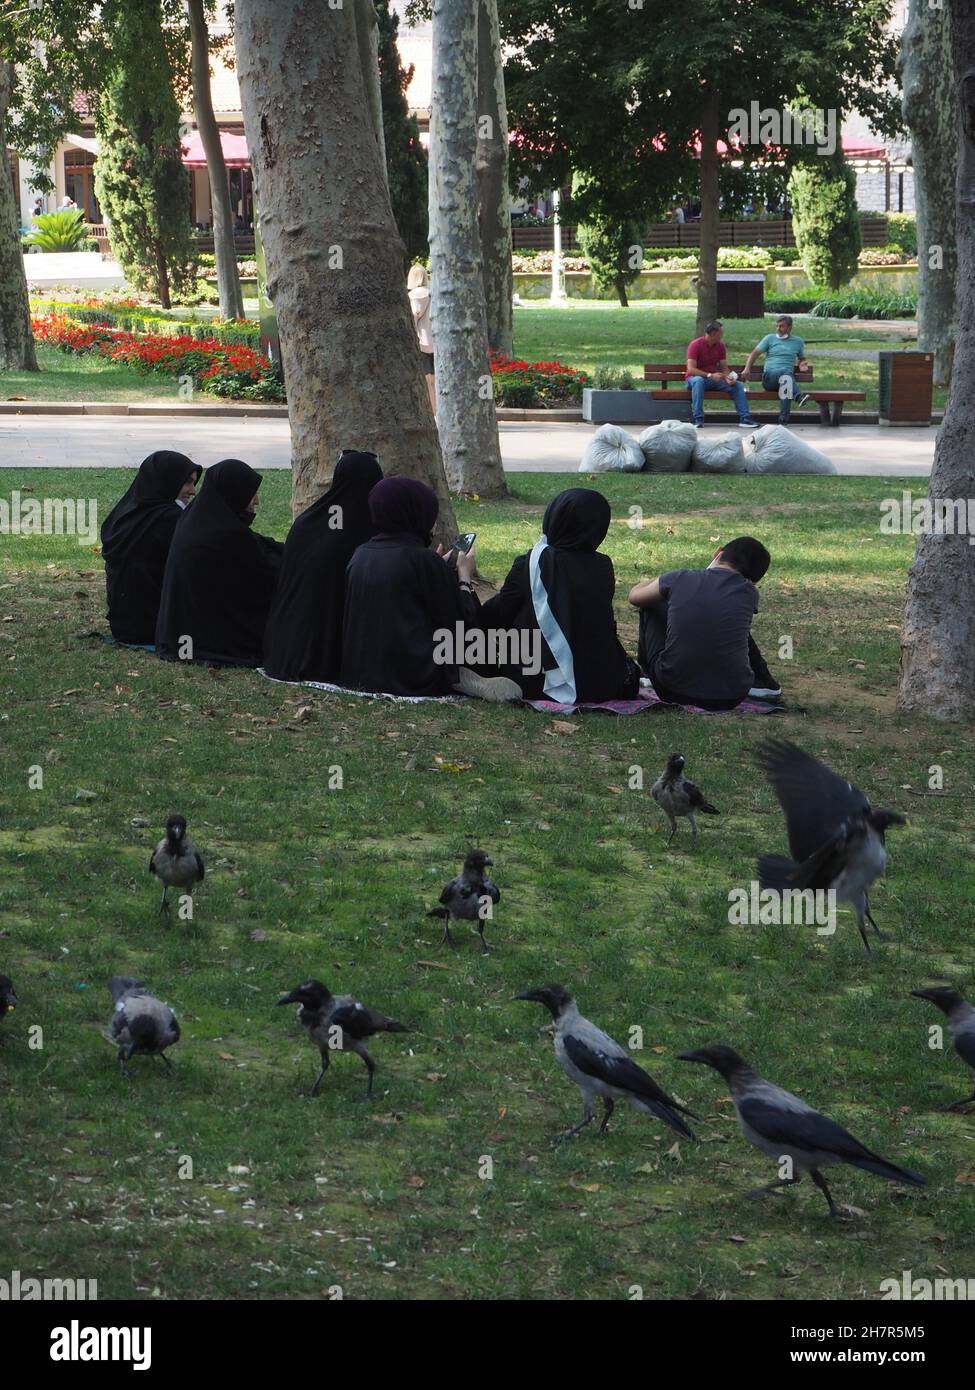 Istanbul ist nicht besonders bekannt für seine Fülle an Parks und Grünflächen, da es sich um eine durch und durch bauorientierte Metropole handelt. Ein paar grüne Gebiete haben es jedoch geschafft, den Ansturm der Gentrifizierung zu überleben, in dem die Menschen ihrer städtischen Routine zumindest eine Weile entkommen können. Intanbul, Türkei. Stockfoto